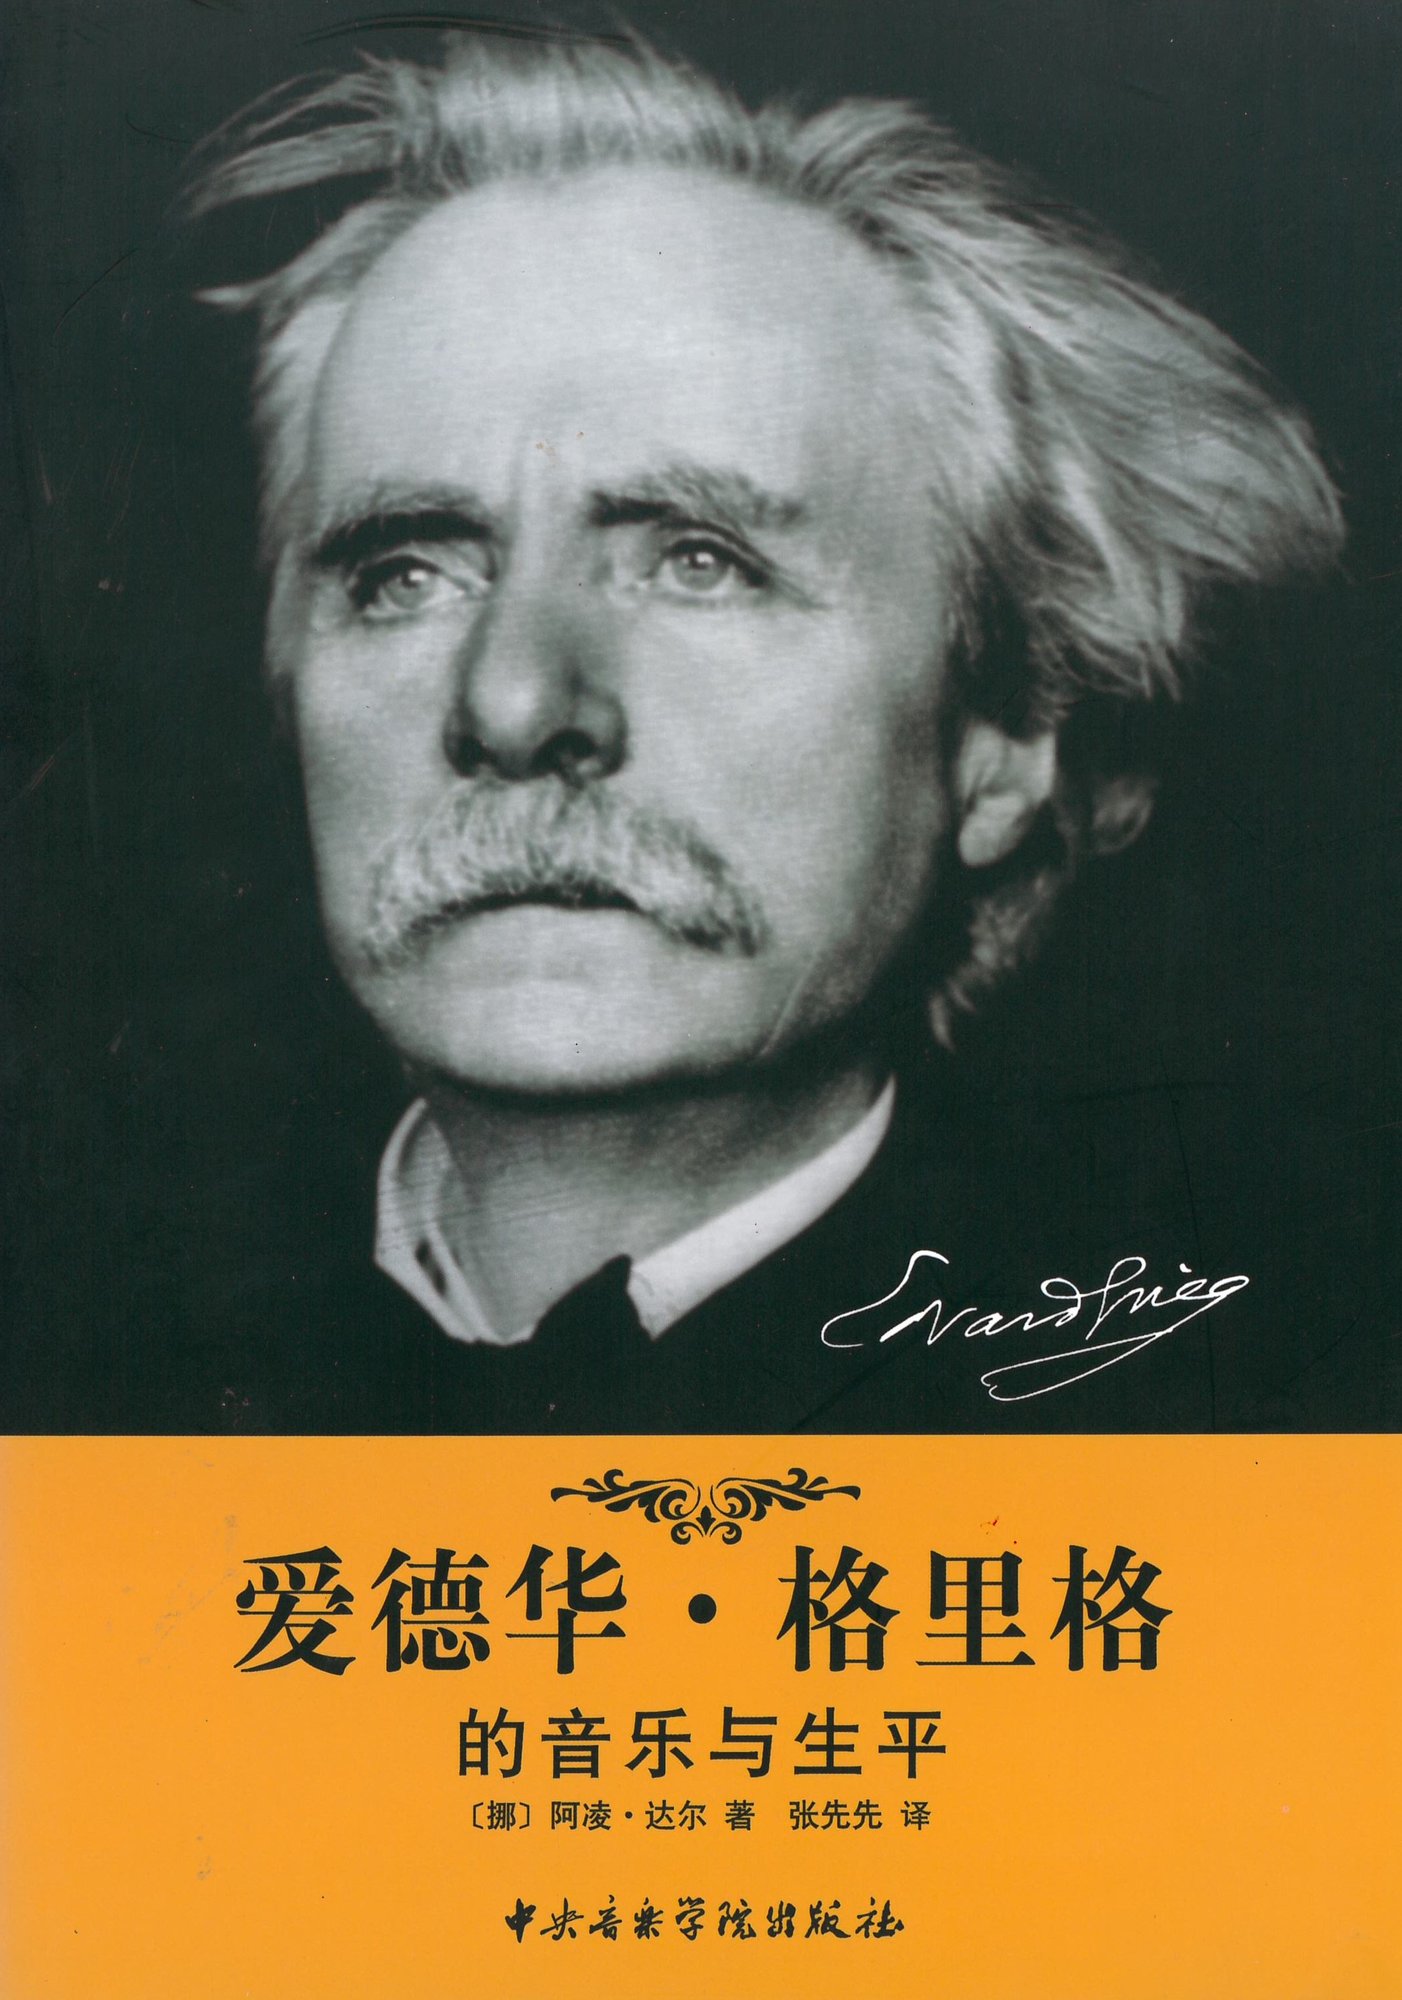 Dahl jr edvard grieg. en introduksjon til hans liv og musikk chinese